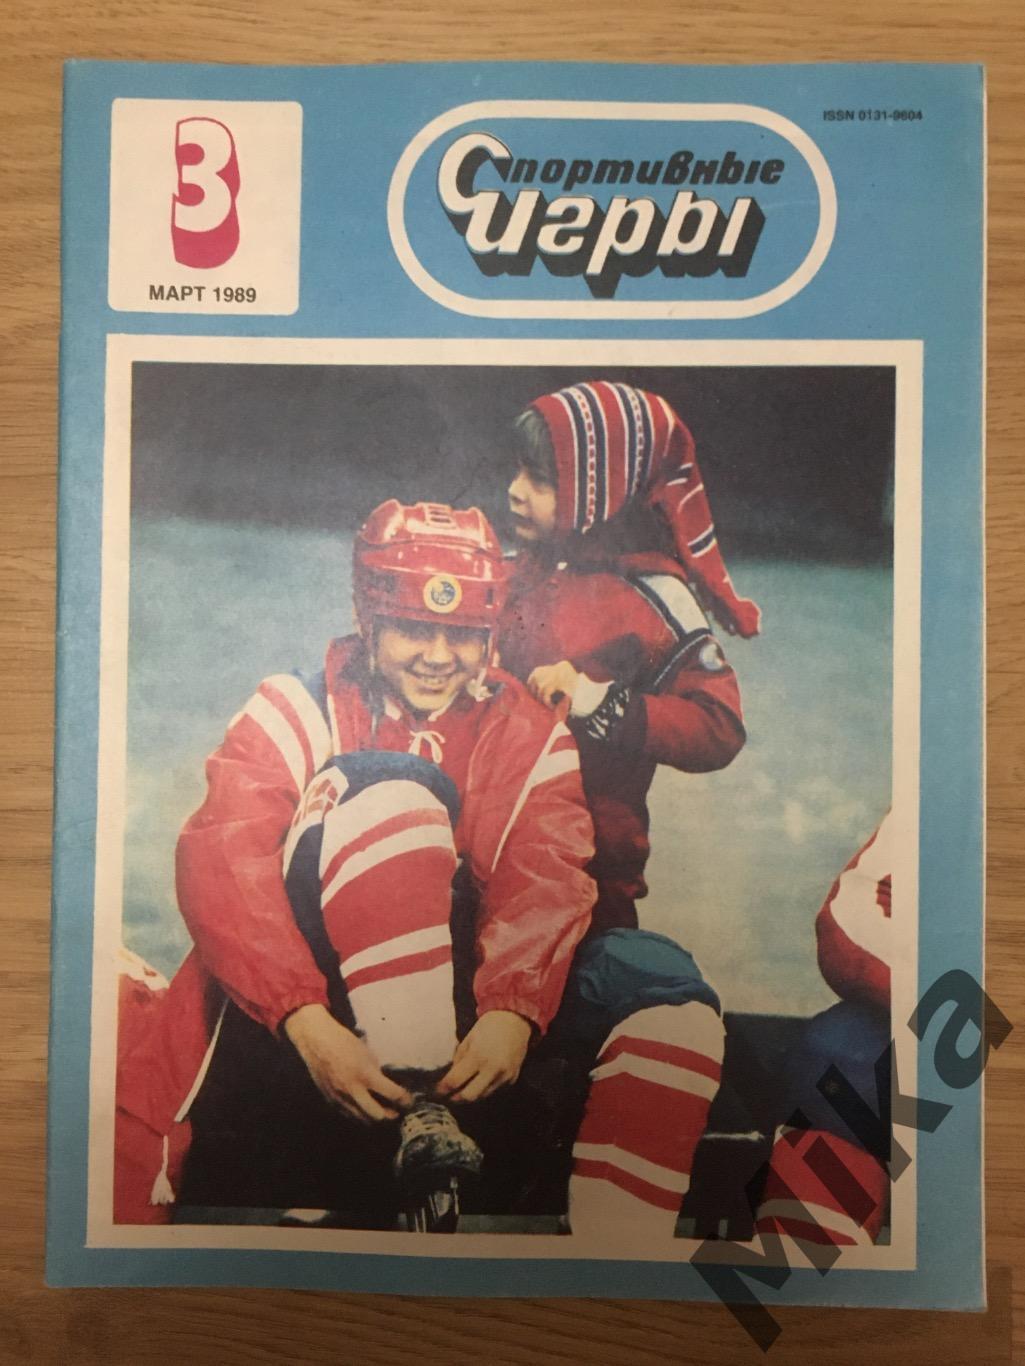 Спортивные Игры 3-1989